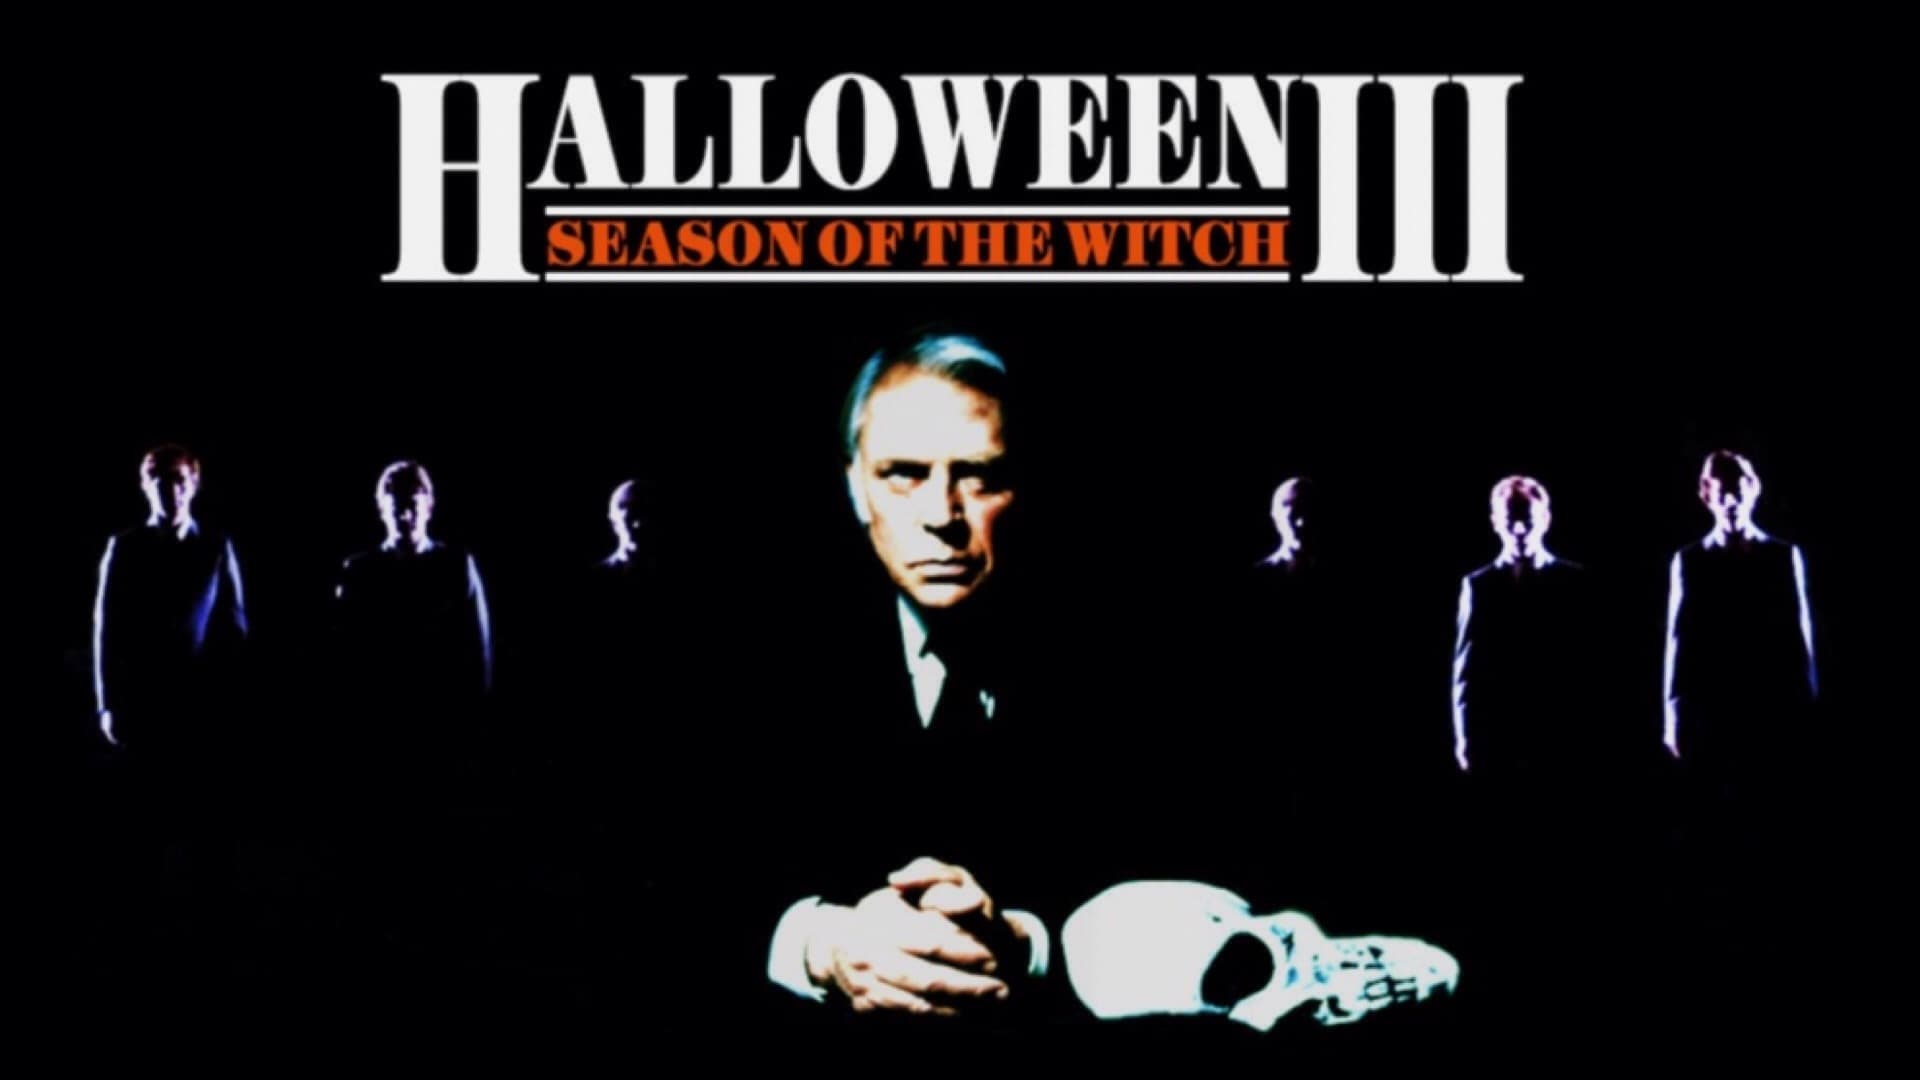 Halloween III: El día de la bruja (1982)